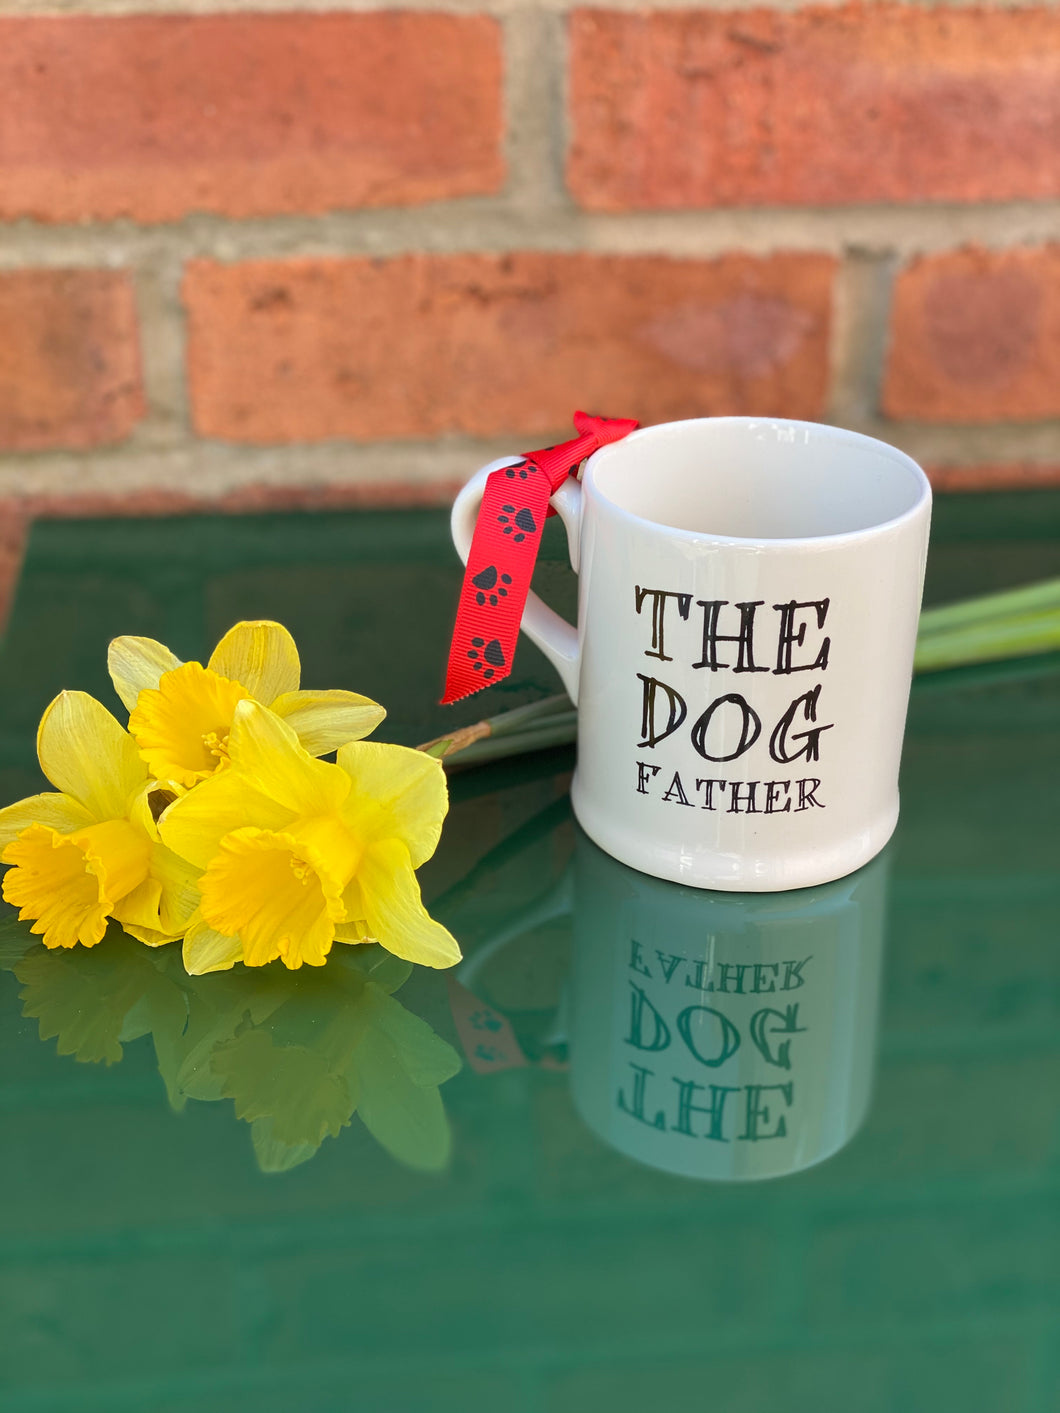 “The dog father” mug